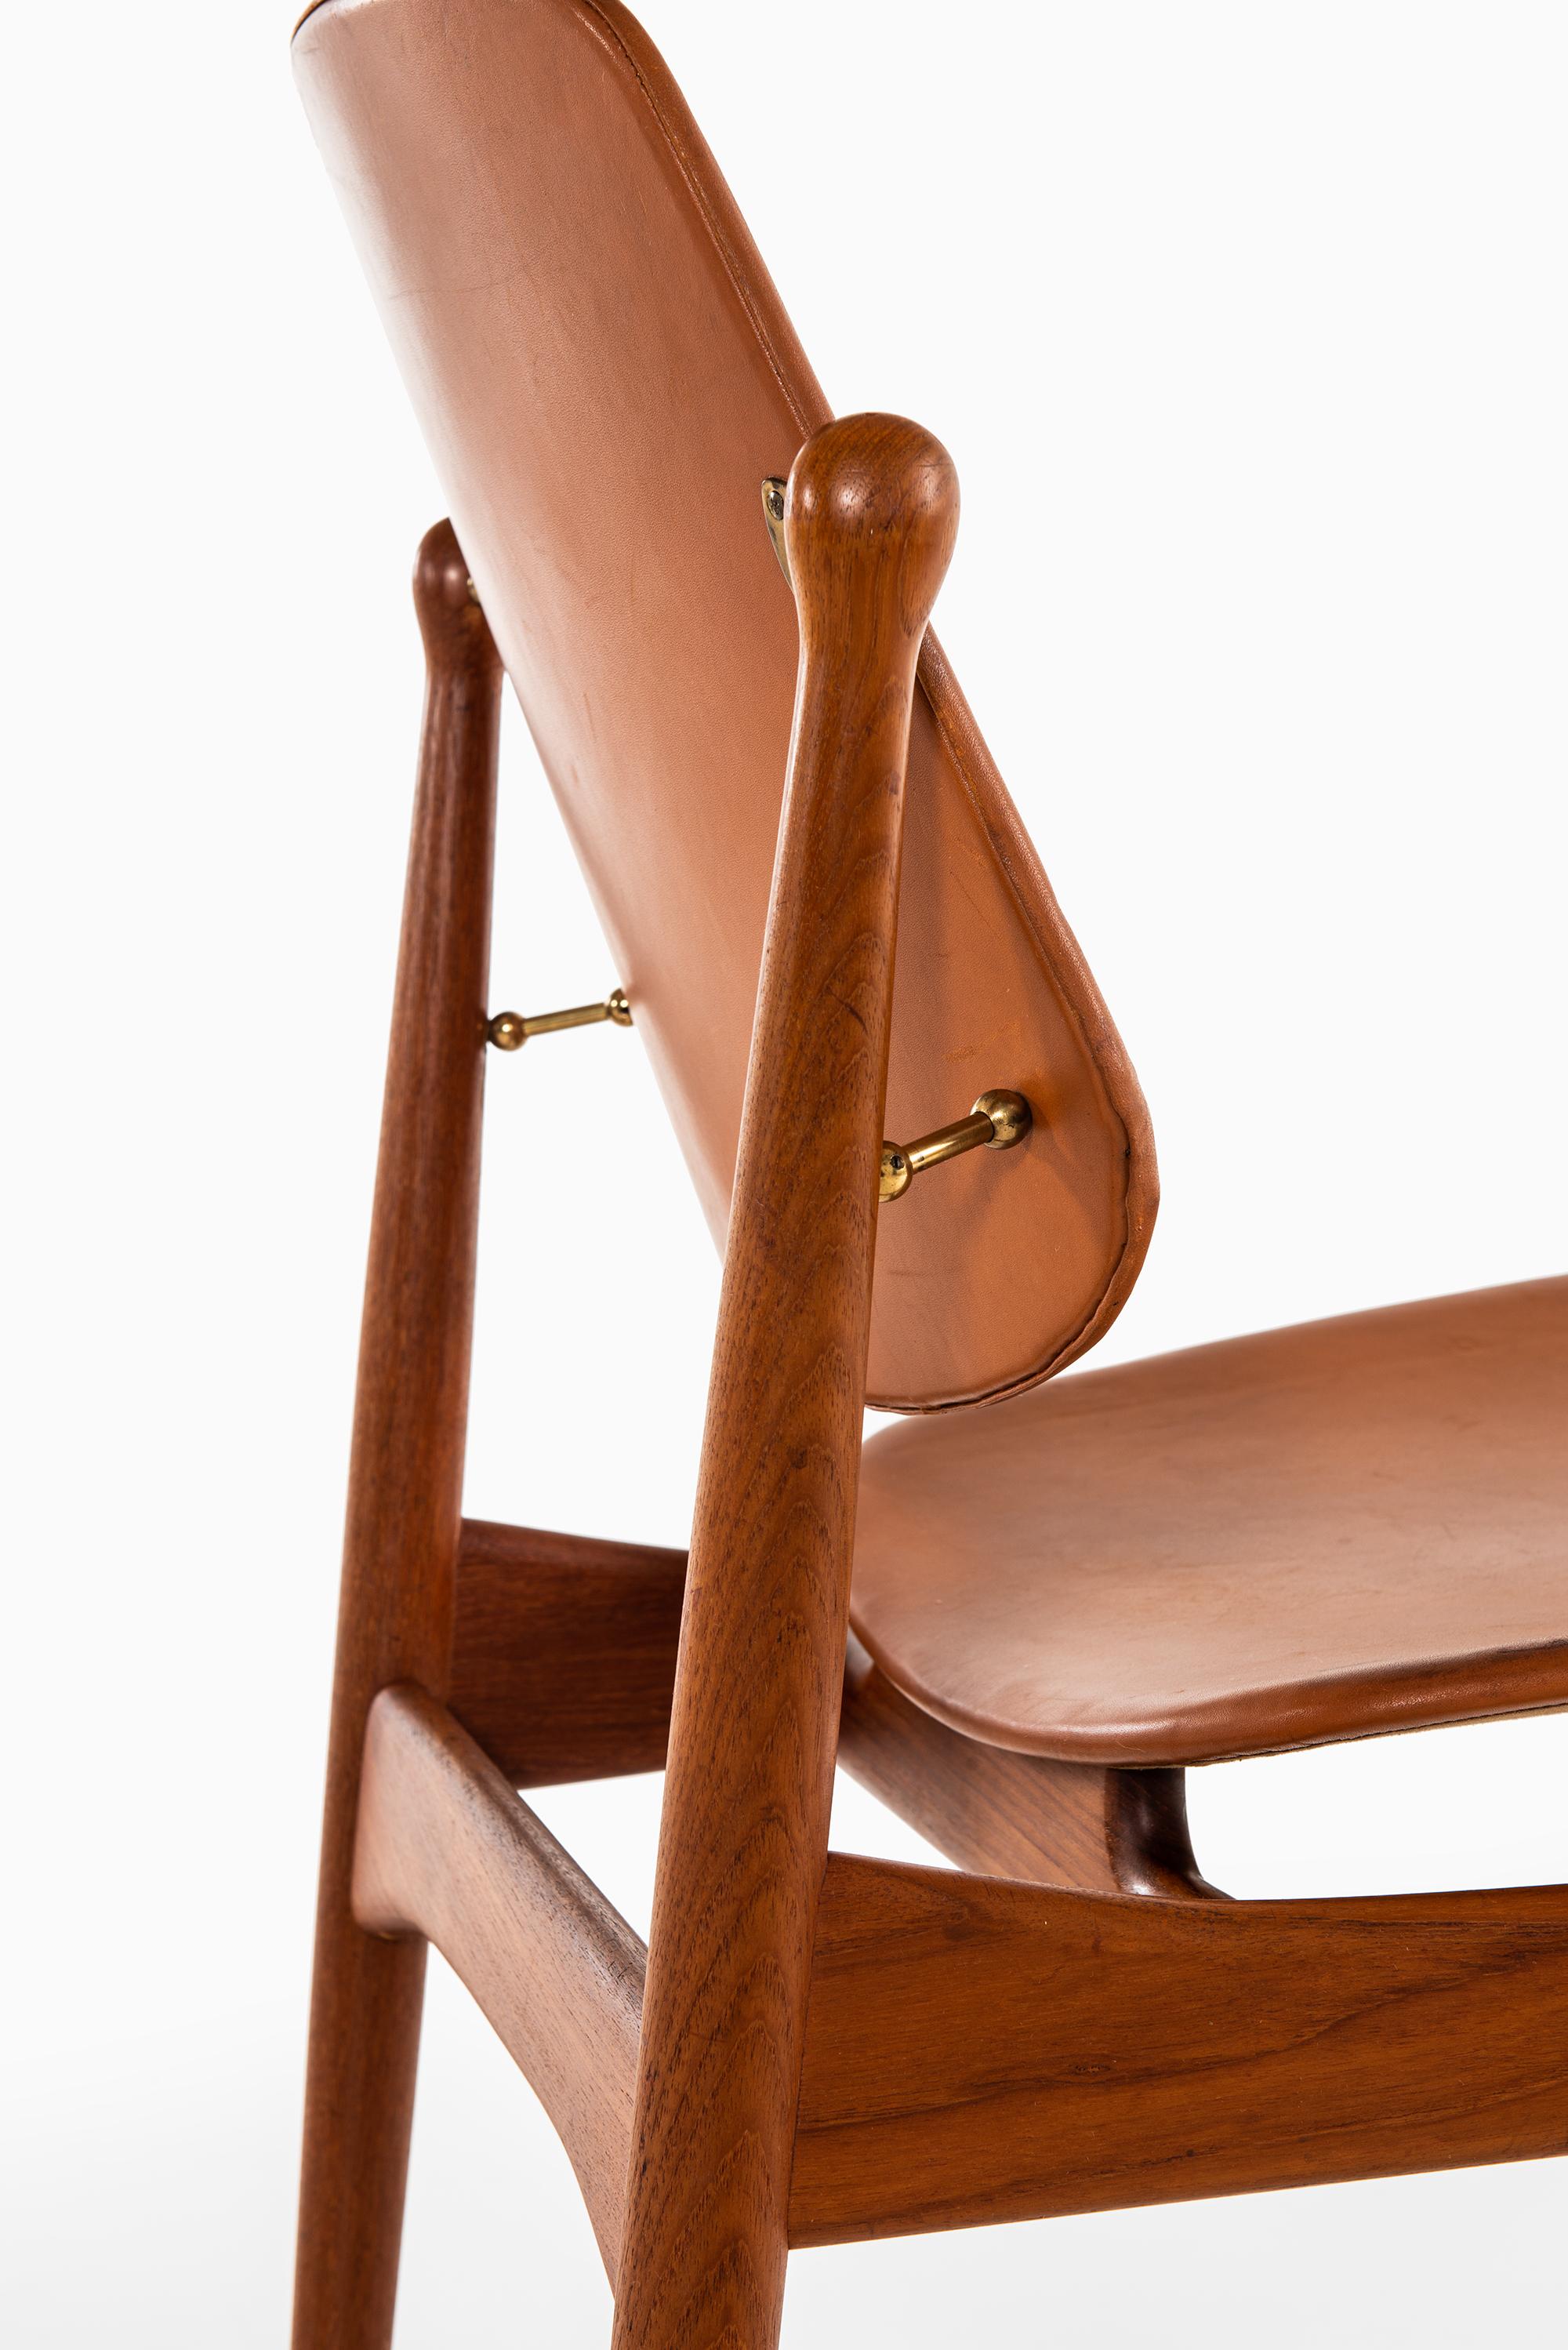 Arne Vodder Dining Chairs Model 203 by France & Daverkosen in Denmark For Sale 3